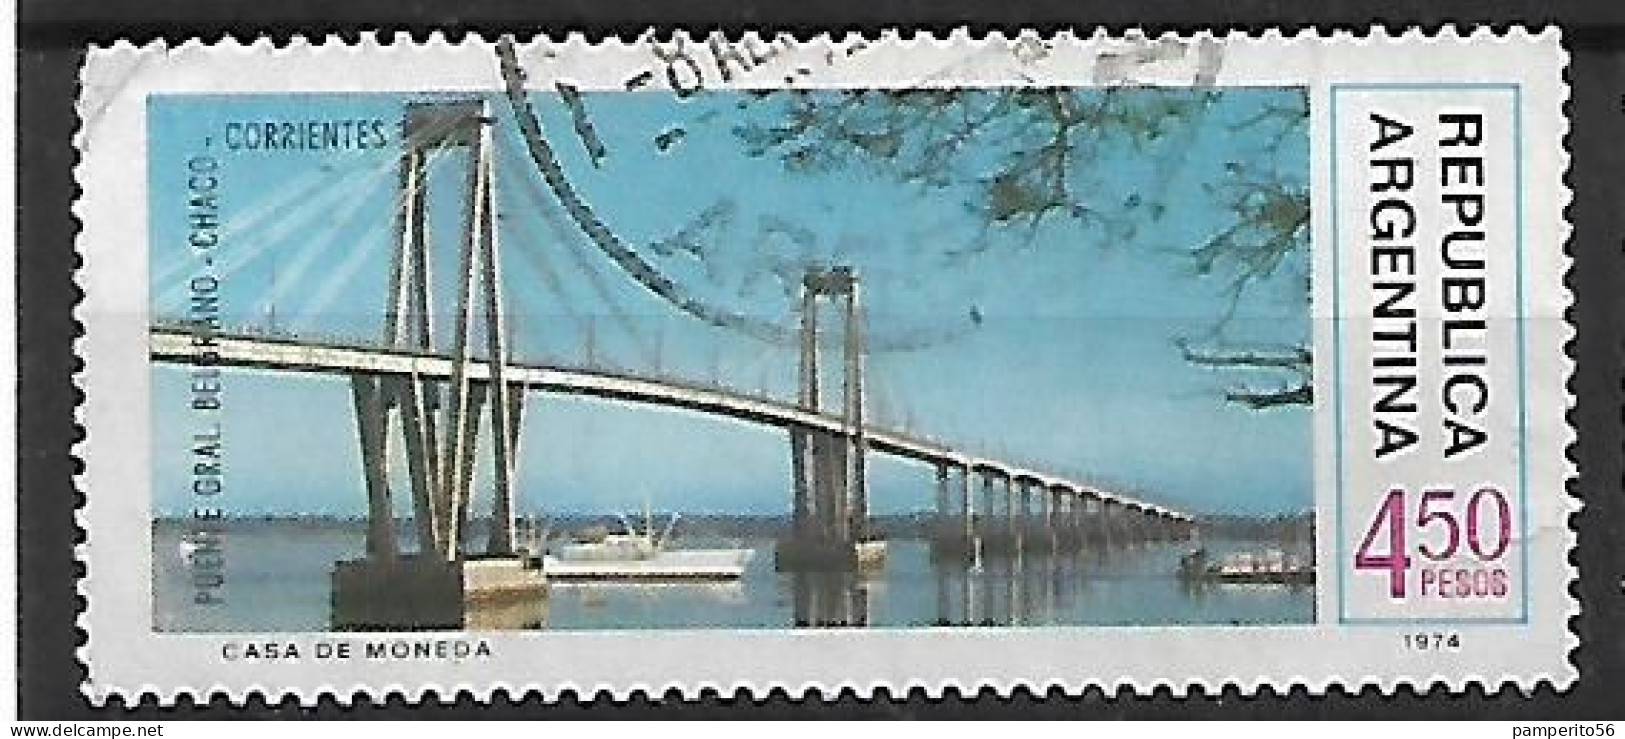 ARGENTINA - AÑO 1974 - Serie Obras De Infraestructura Nacional - Puente Chaco Corrientes - Usado - Used Stamps